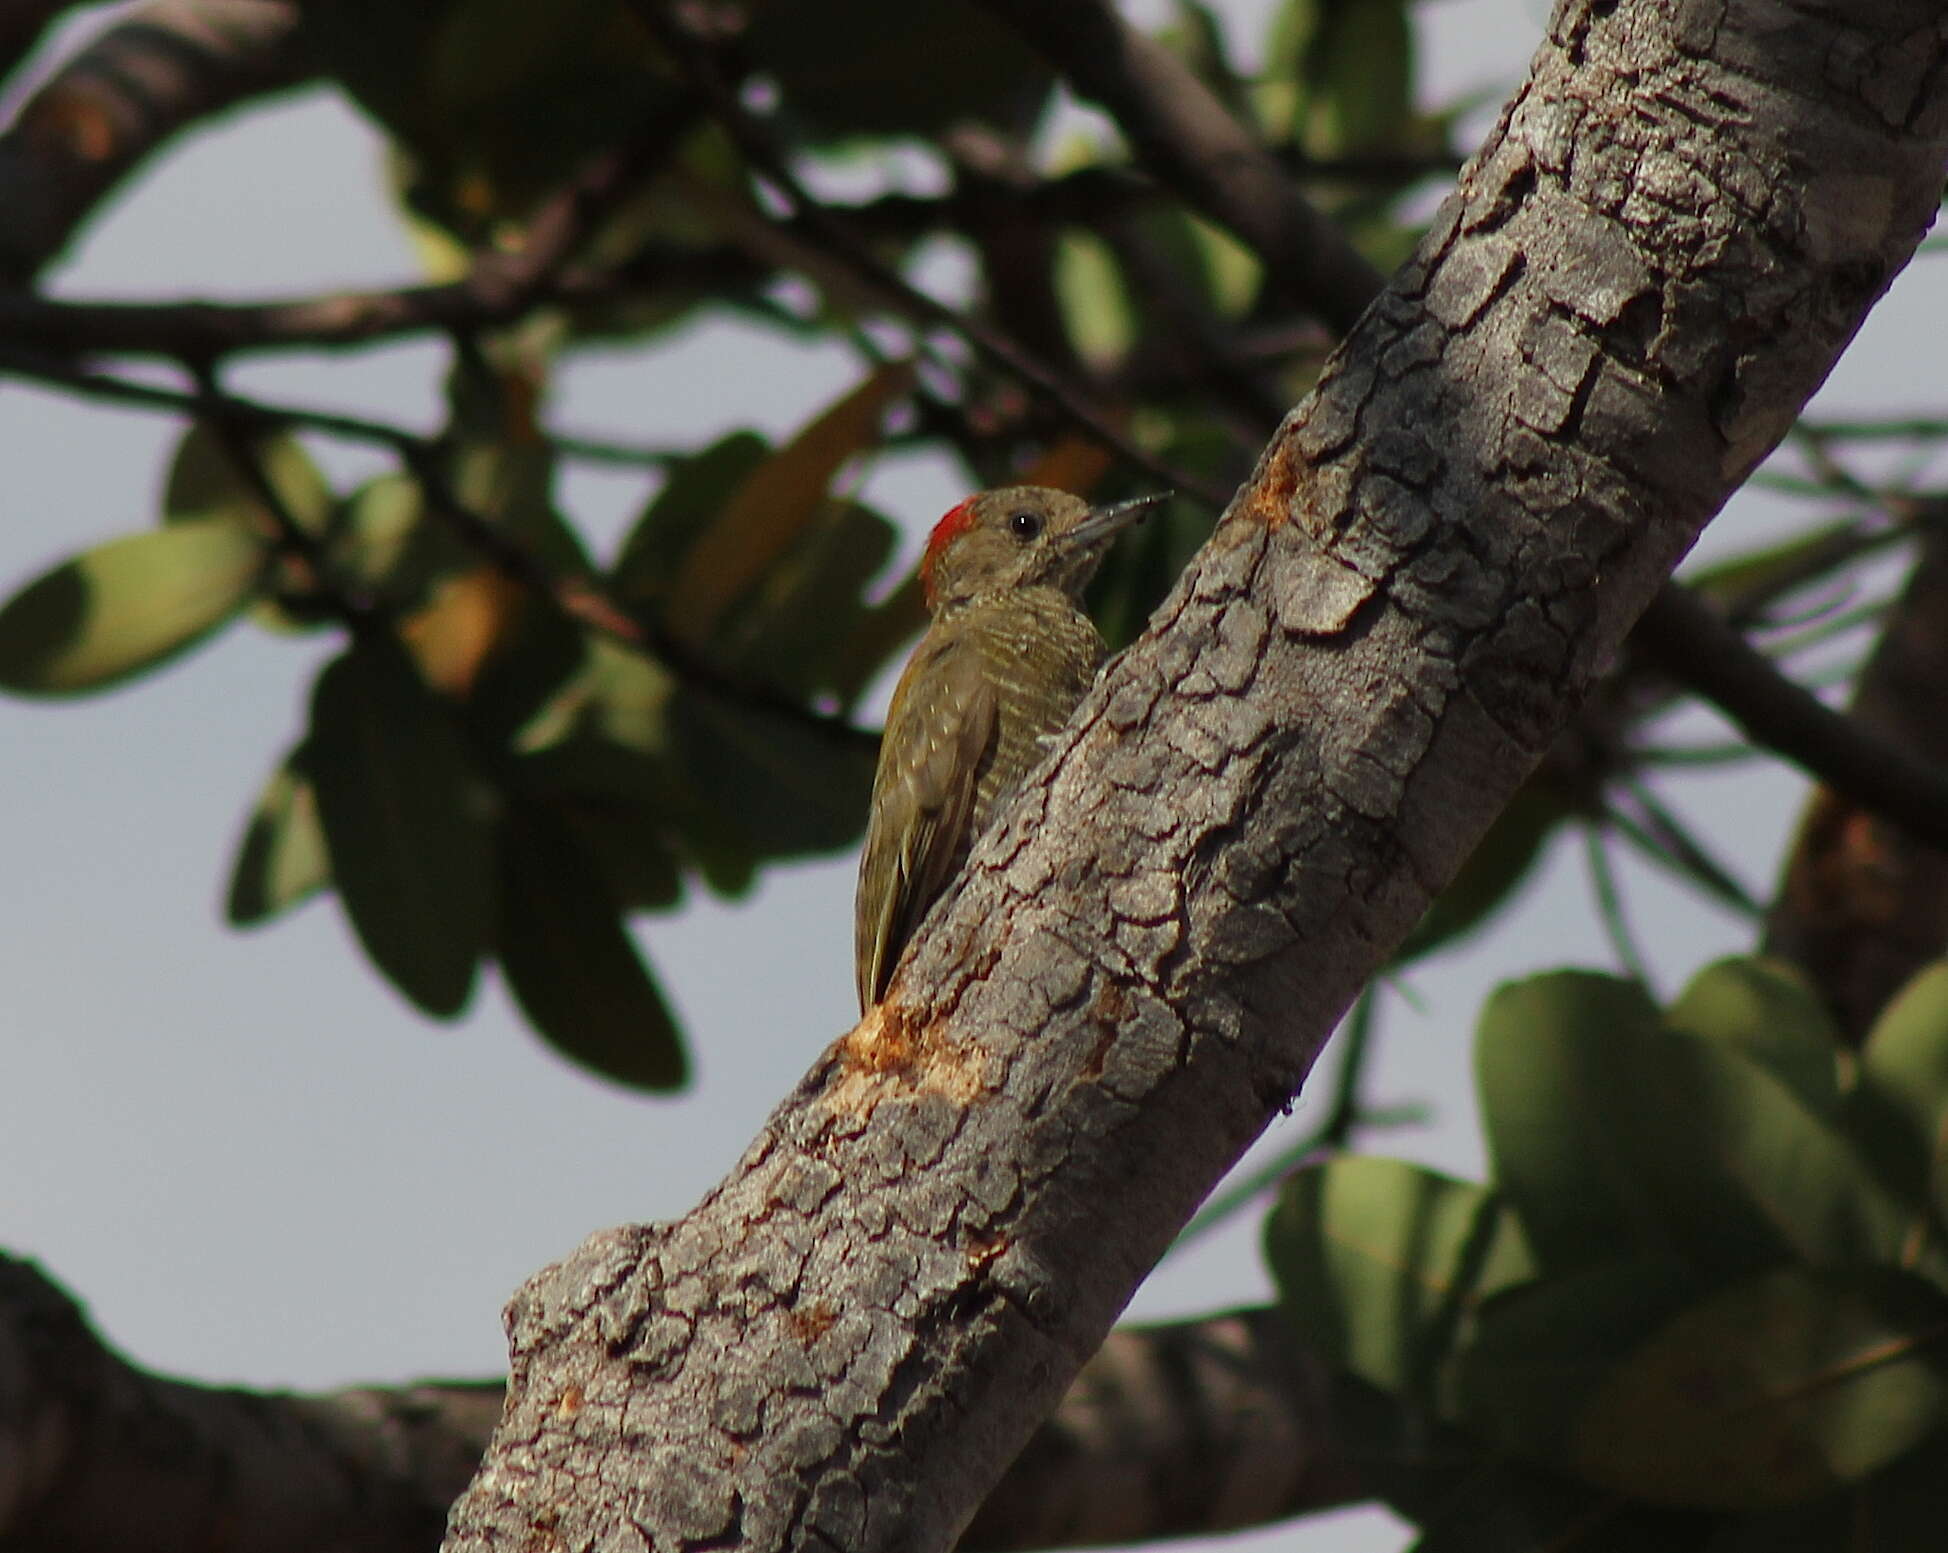 Image of Little Woodpecker